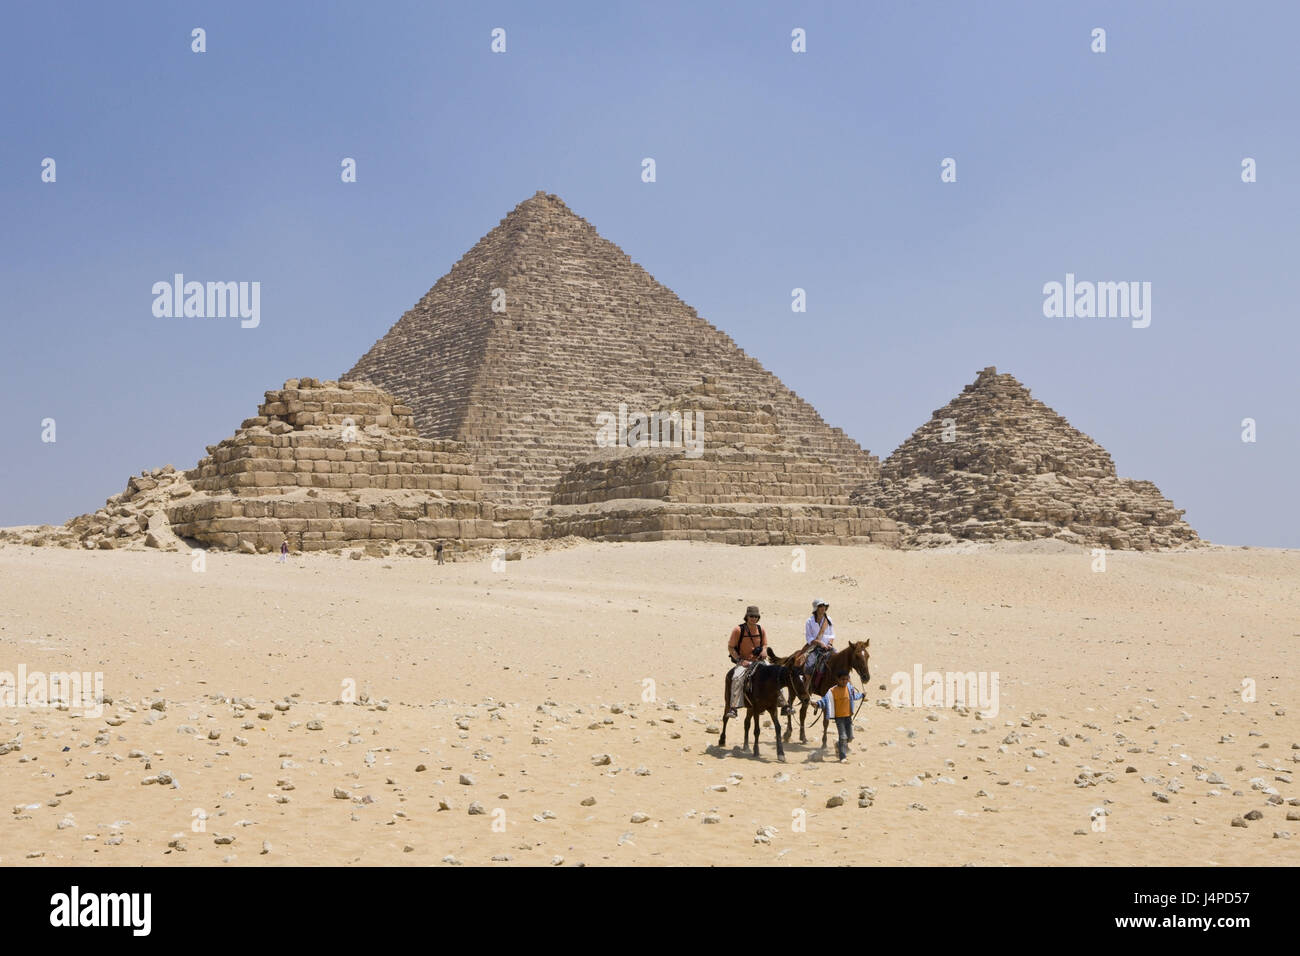 Ripperblackstaff pyramide et trois petites pyramides de la reine, l'Égypte, Le Caire, touristiques, Banque D'Images